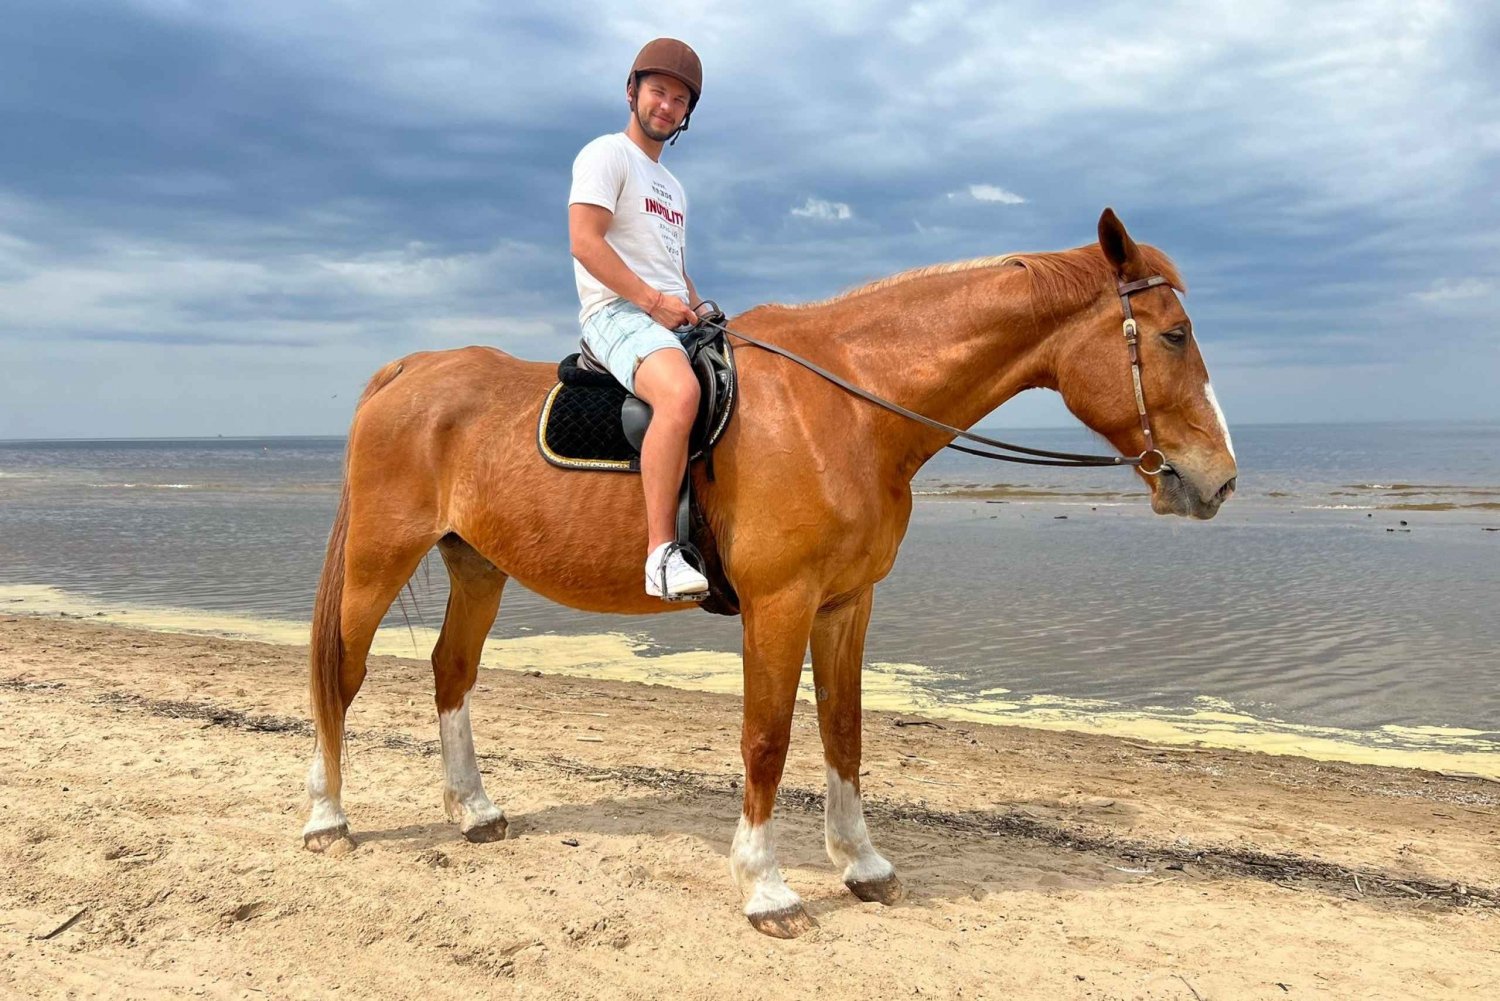 Riga Horse Riding tour along the Beach